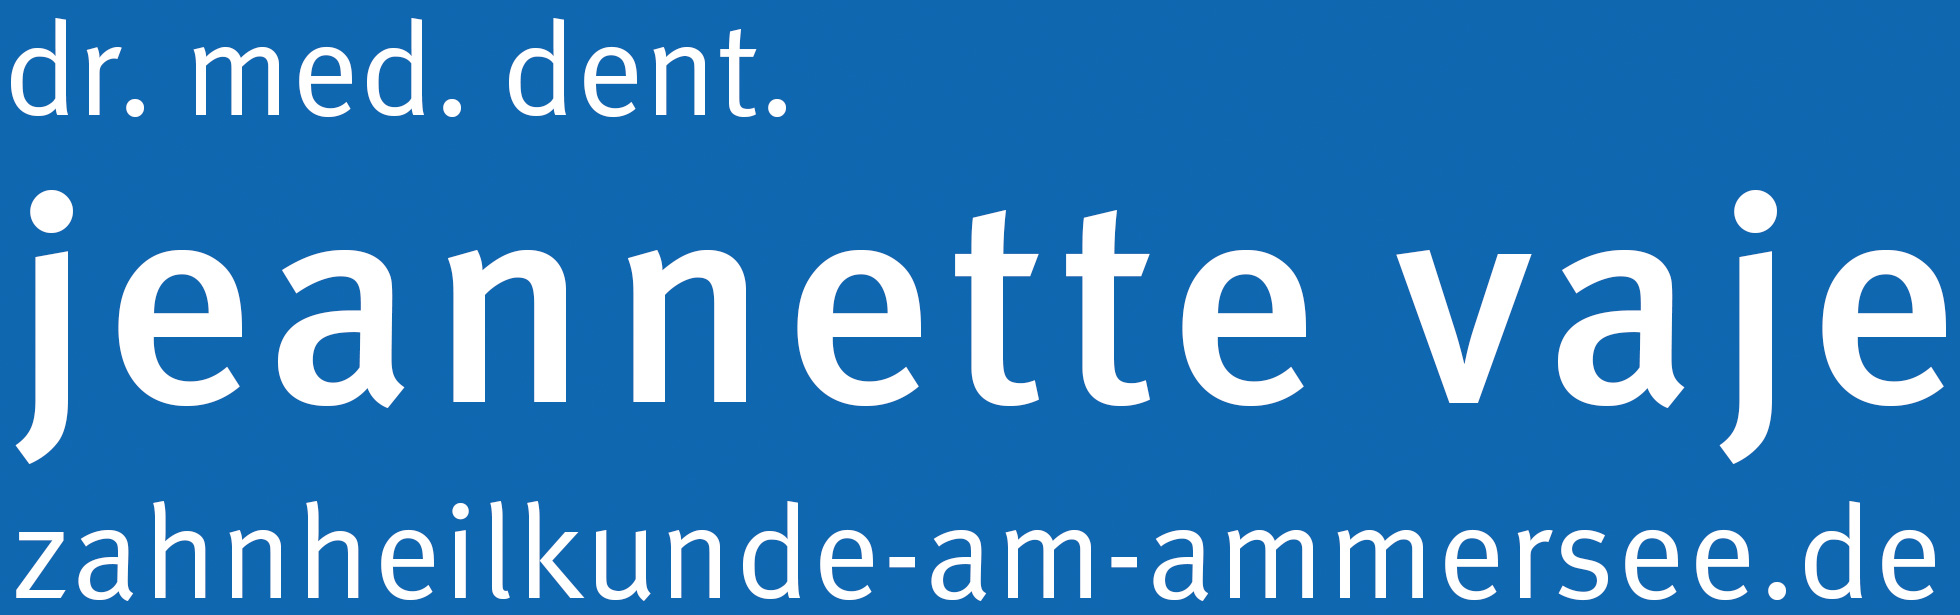 dr. med. dent. jeannette vaje zahnheilkunde-am-ammersee.de - Logo